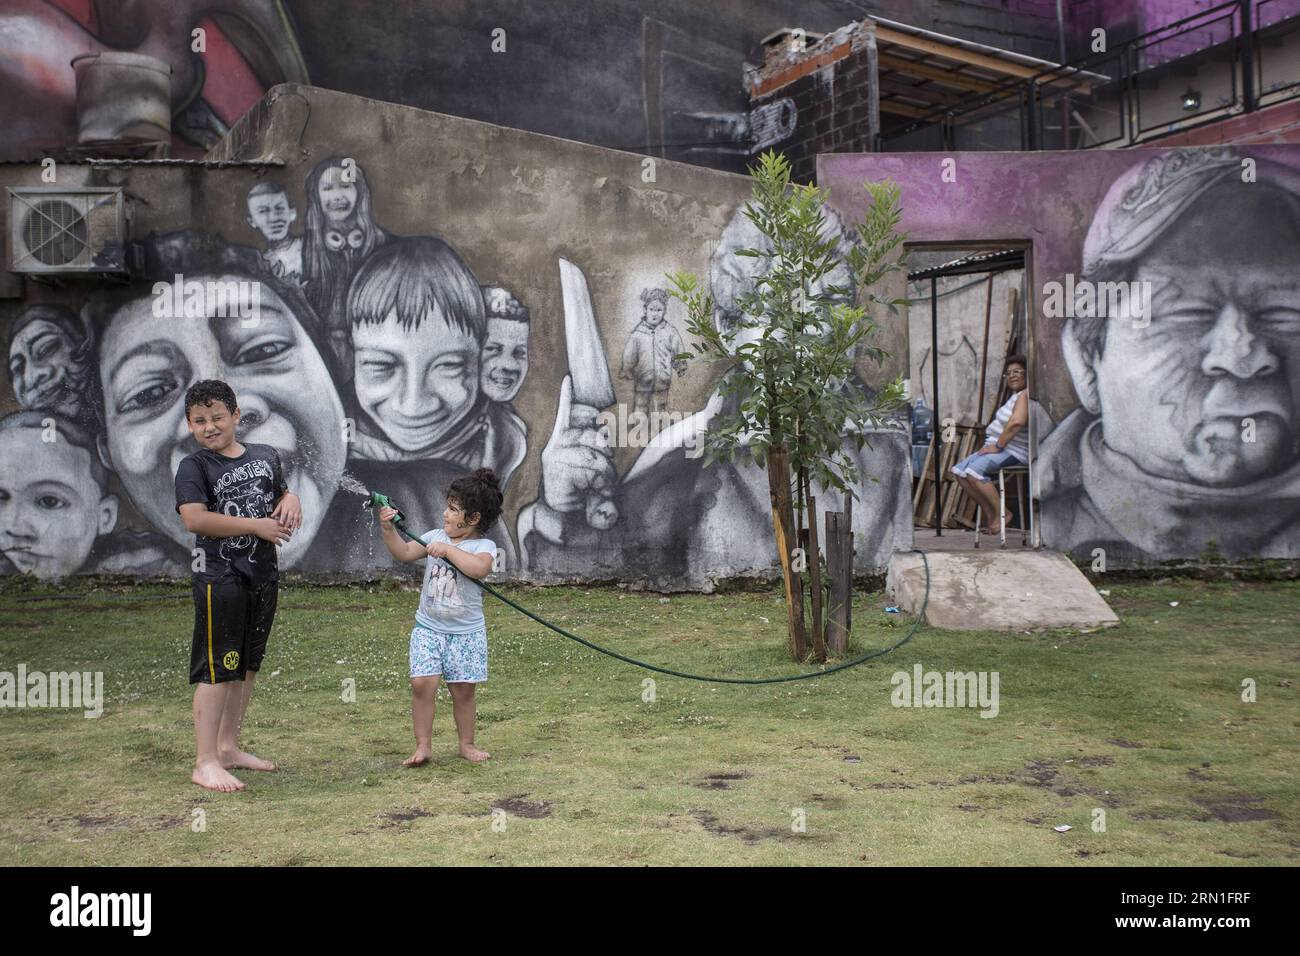 BUENOS AIRES, le 27 décembre 2014 -- des enfants jouent avec l'eau devant la fresque El Regreso de Quinquela , créée par l'artiste argentin et muraliste urbain Alfredo Segatori, à Buenos Aires, Argentine, le 27 décembre 2014. Réalisée sur une surface de plus de 2 000 mètres carrés, la murale est devenue samedi la plus grande du monde, selon la presse locale. Martin Zabala)(zhf) ARGENTINA-BUENOS AIRES-CULTURE-MURAL e MARTINxZABALA PUBLICATIONxNOTxINxCHN Buenos Aires DEC 27 2014 enfants jouent avec l'eau devant le mural El Regreso de créé par l'artiste argentin et muraliste urbain Alfredo à Buenos Aires Banque D'Images